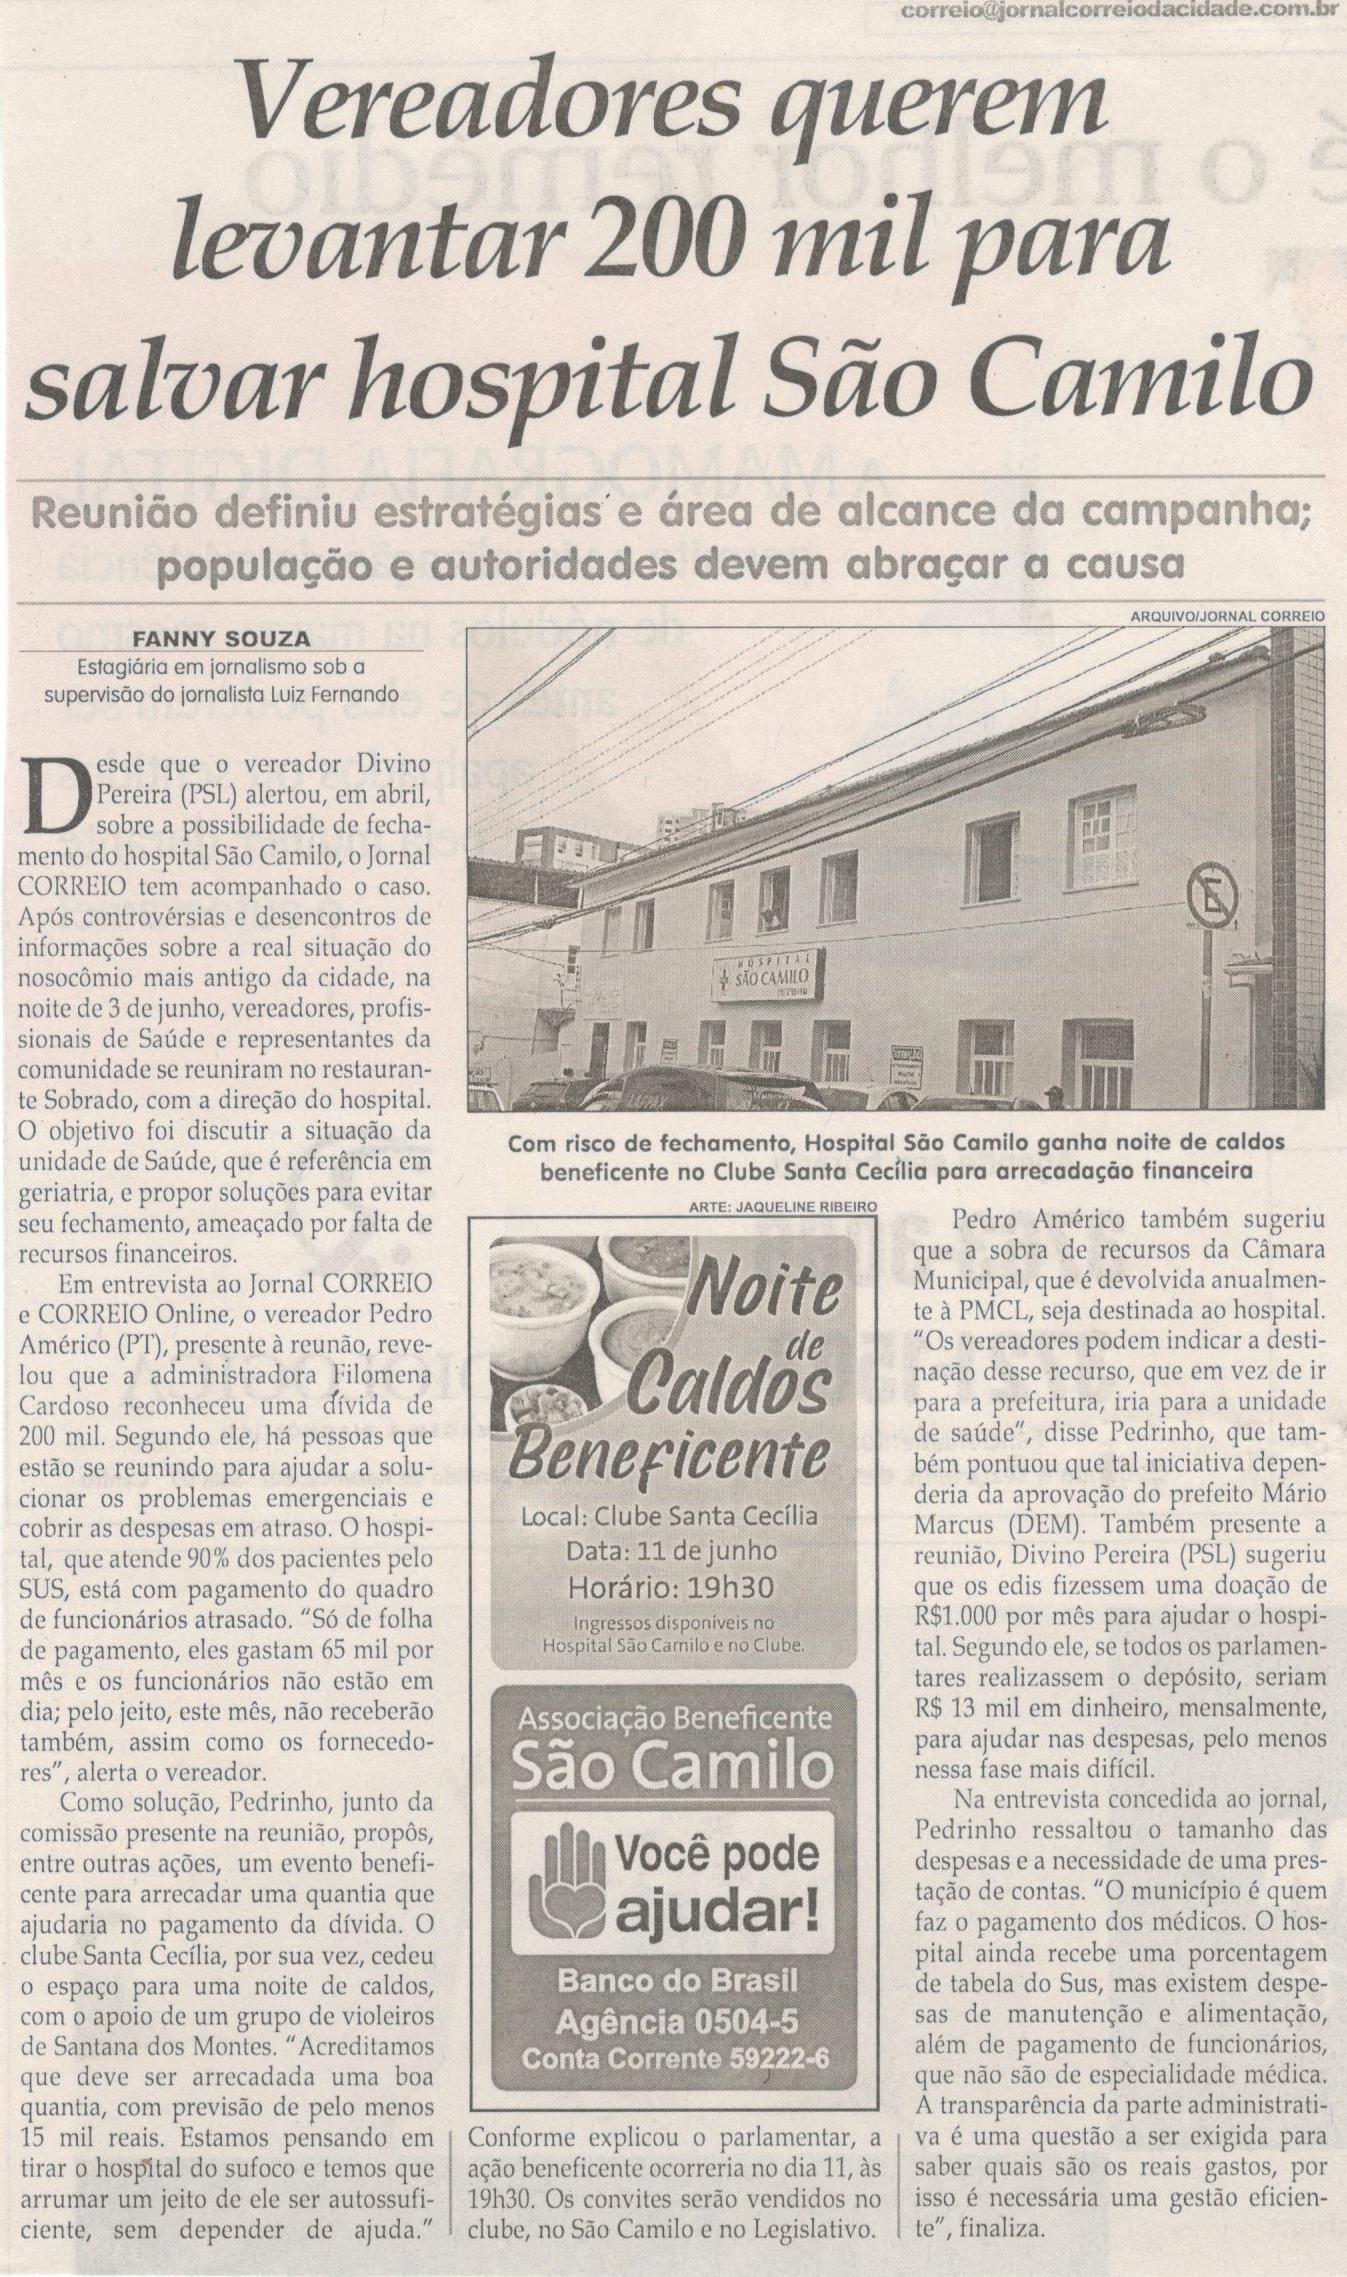 Vereadores querem levantar 200 mil para salvar hospital São Camilo. Jornal Correio da Cidade, 08 jun. a 14 jun, 1477ª ed., Caderno Saúde, p. 35.